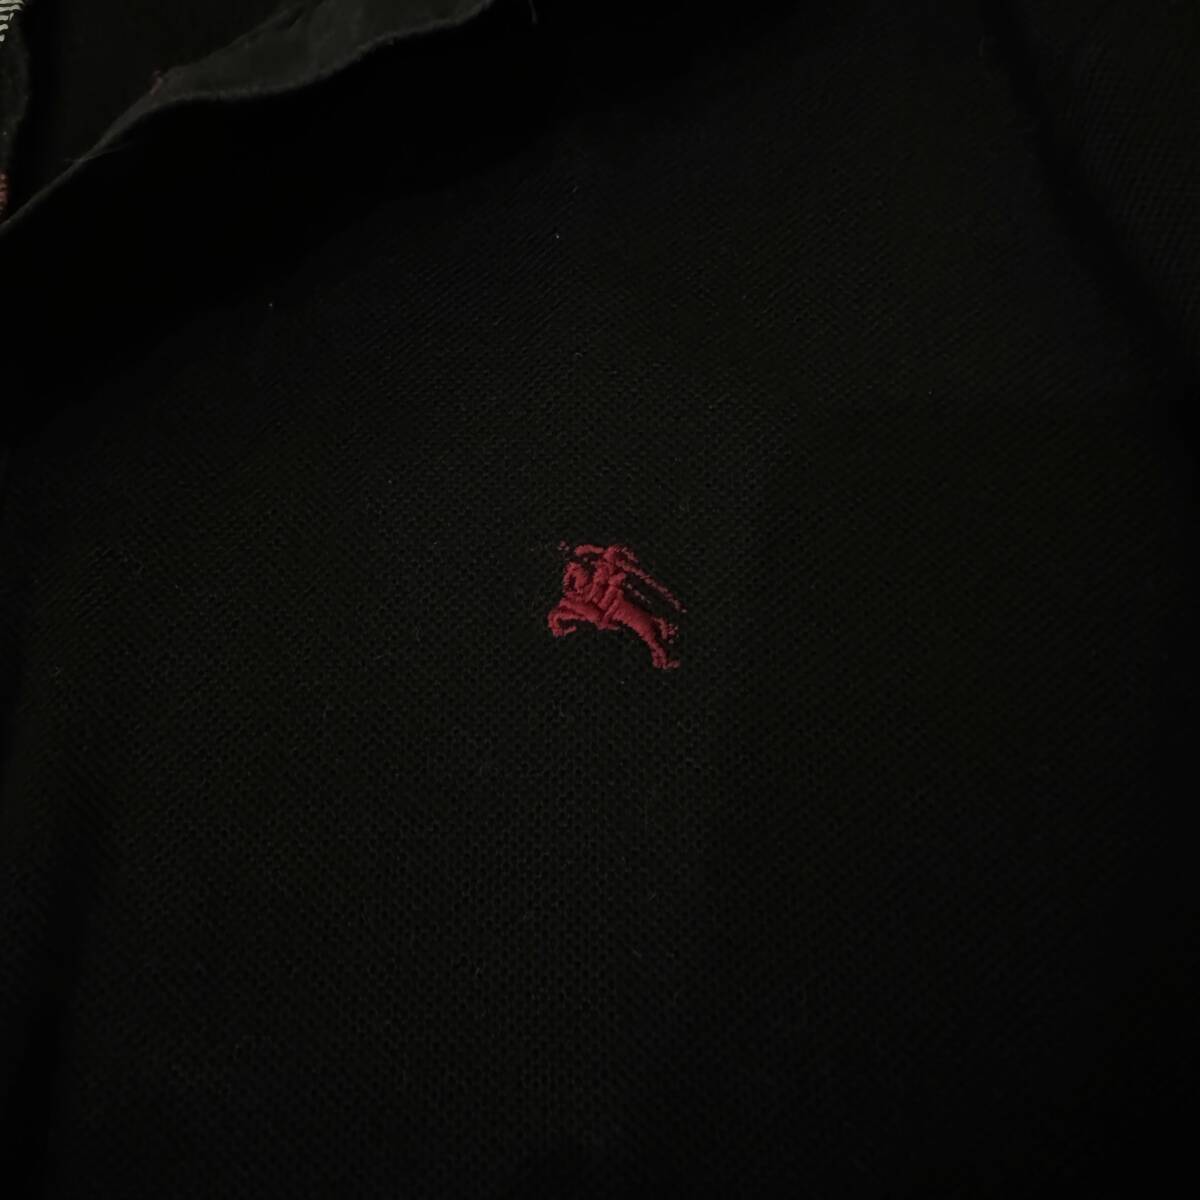  прекрасный наименование товара произведение BURBERRY BLACK LABEL Burberry Black Label рубашка-поло с коротким рукавом олень. . передний .noba проверка шланг вышивка чёрный 2(M) сделано в Японии #2738